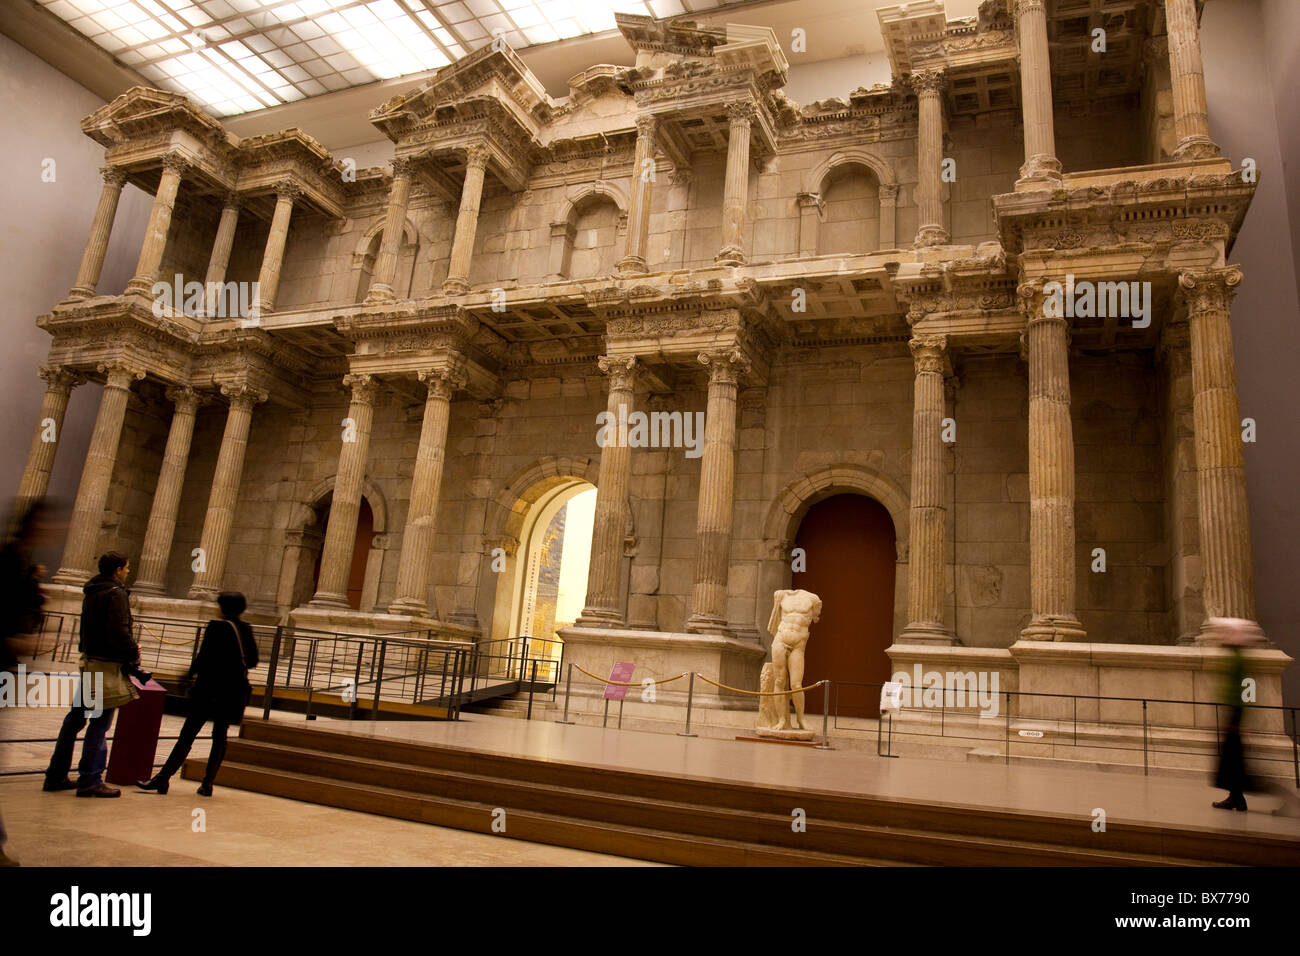 La porte du marché de Milet au Musée de Pergame, Berlin, Germany, Europe Banque D'Images